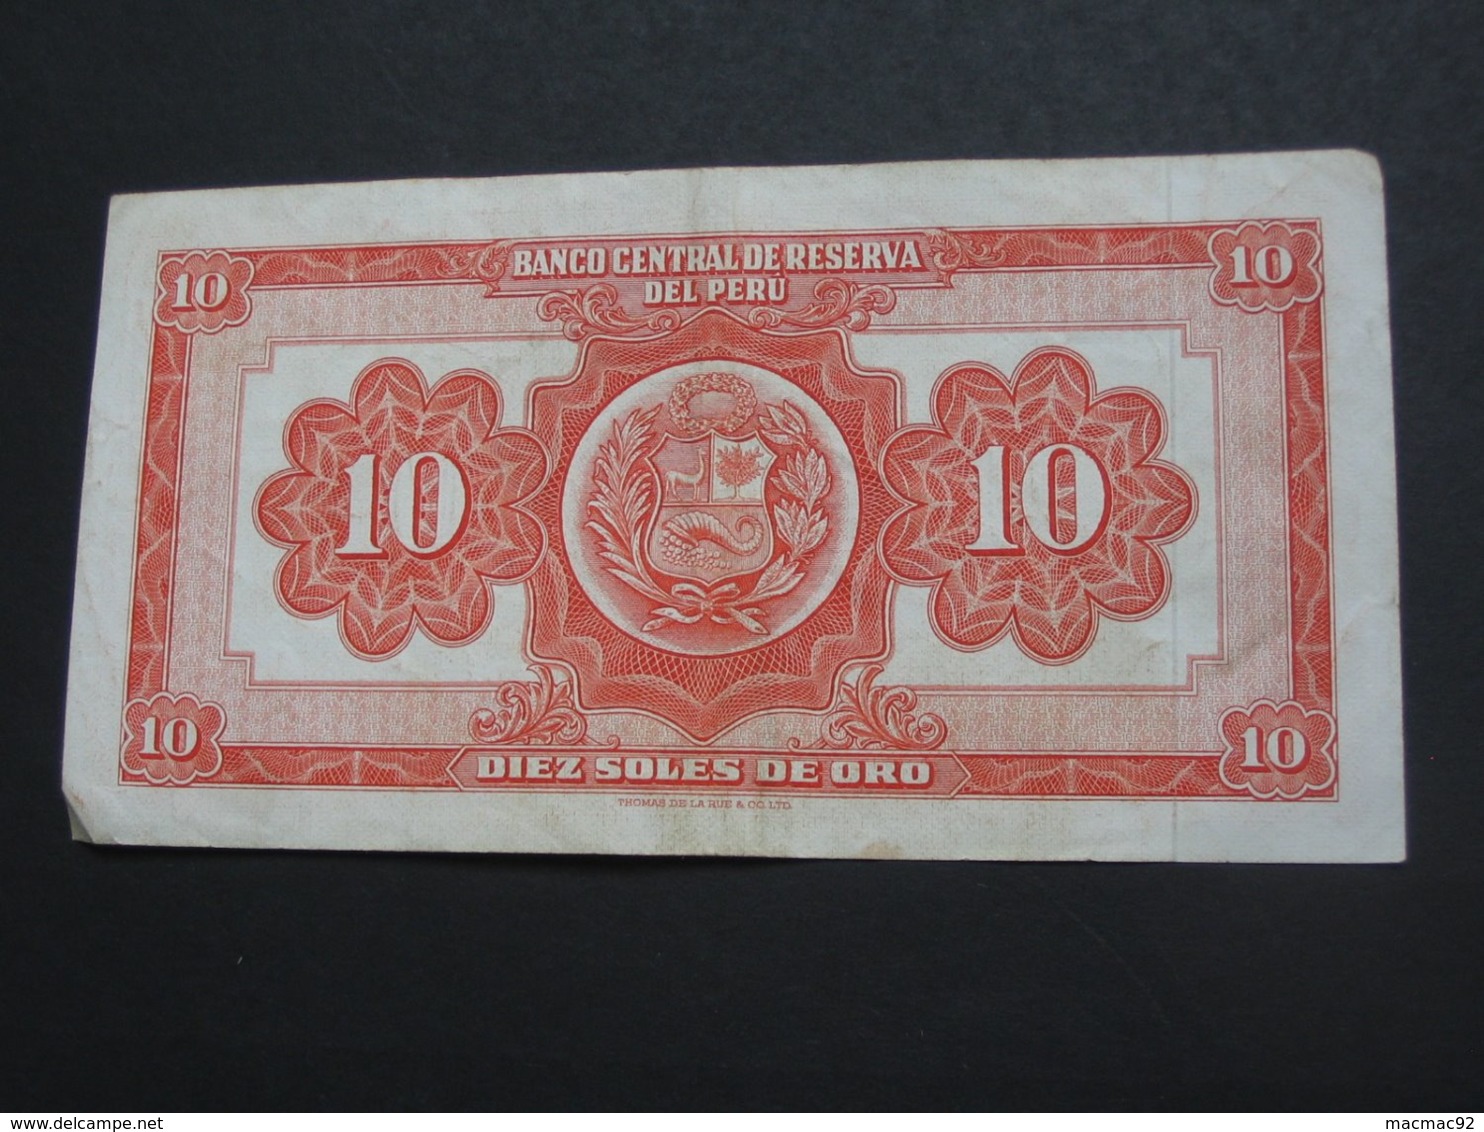 10 Diez Soles De Oro 1967 - Banco Central De Reserva Del Peru  **** EN ACHAT IMMEDIAT **** - Peru